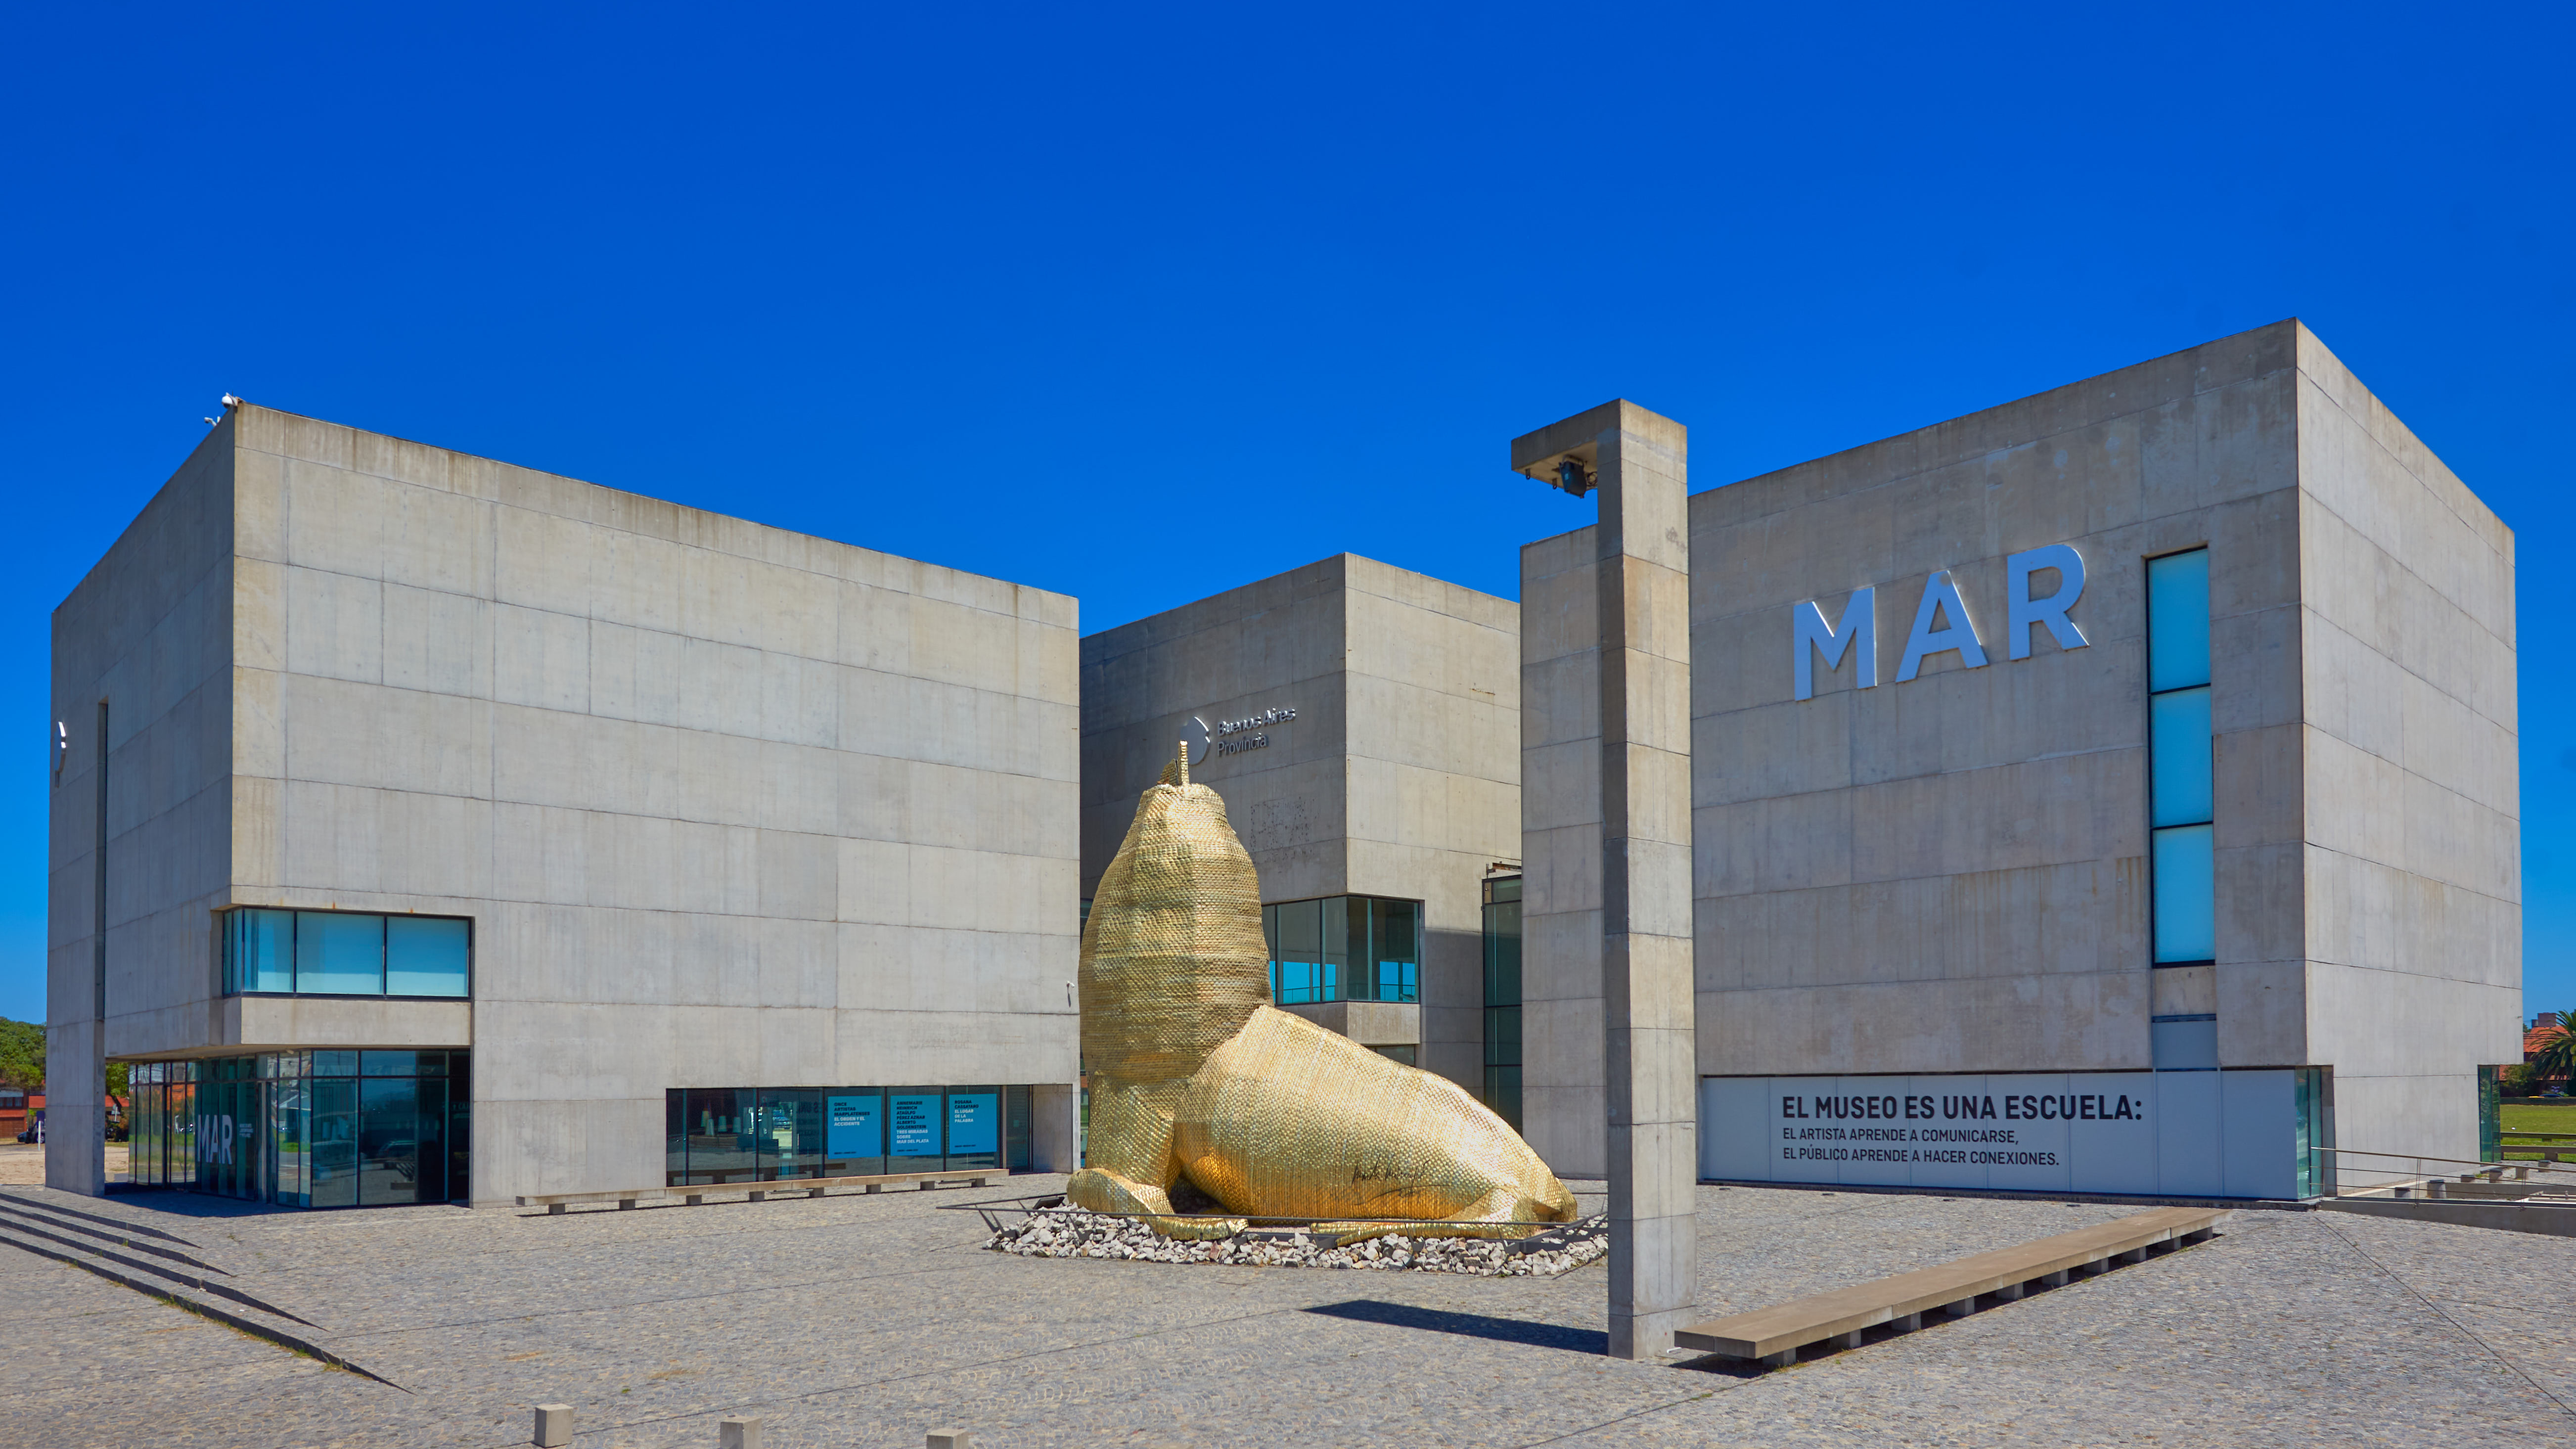 El MAR (Museo Provincial de Arte Contemporáneo) integra la amplia oferta de propuestas culturales de la ciudad